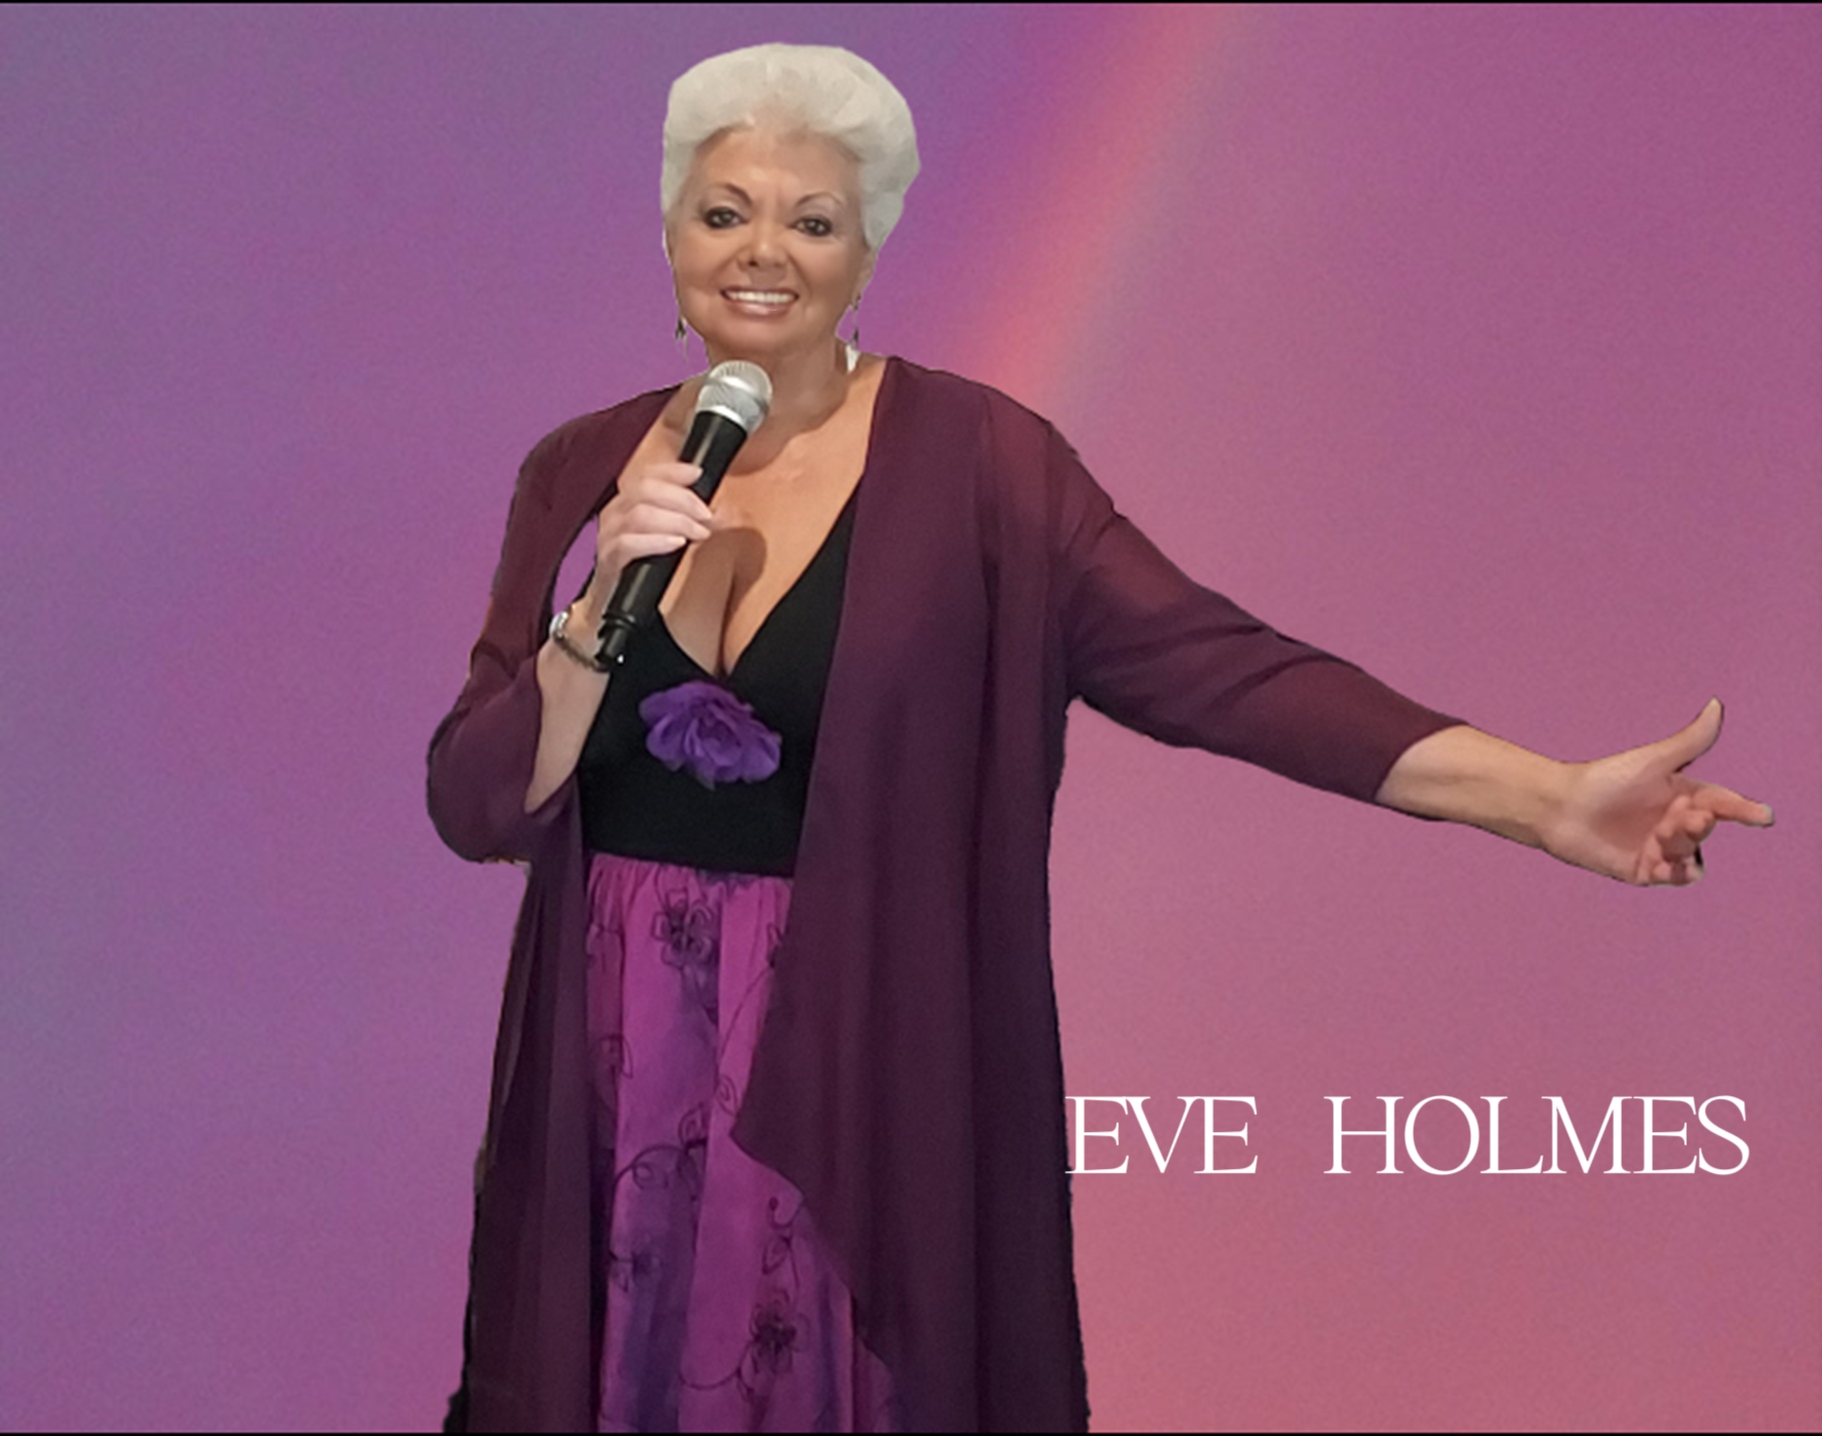 Eve Holmes